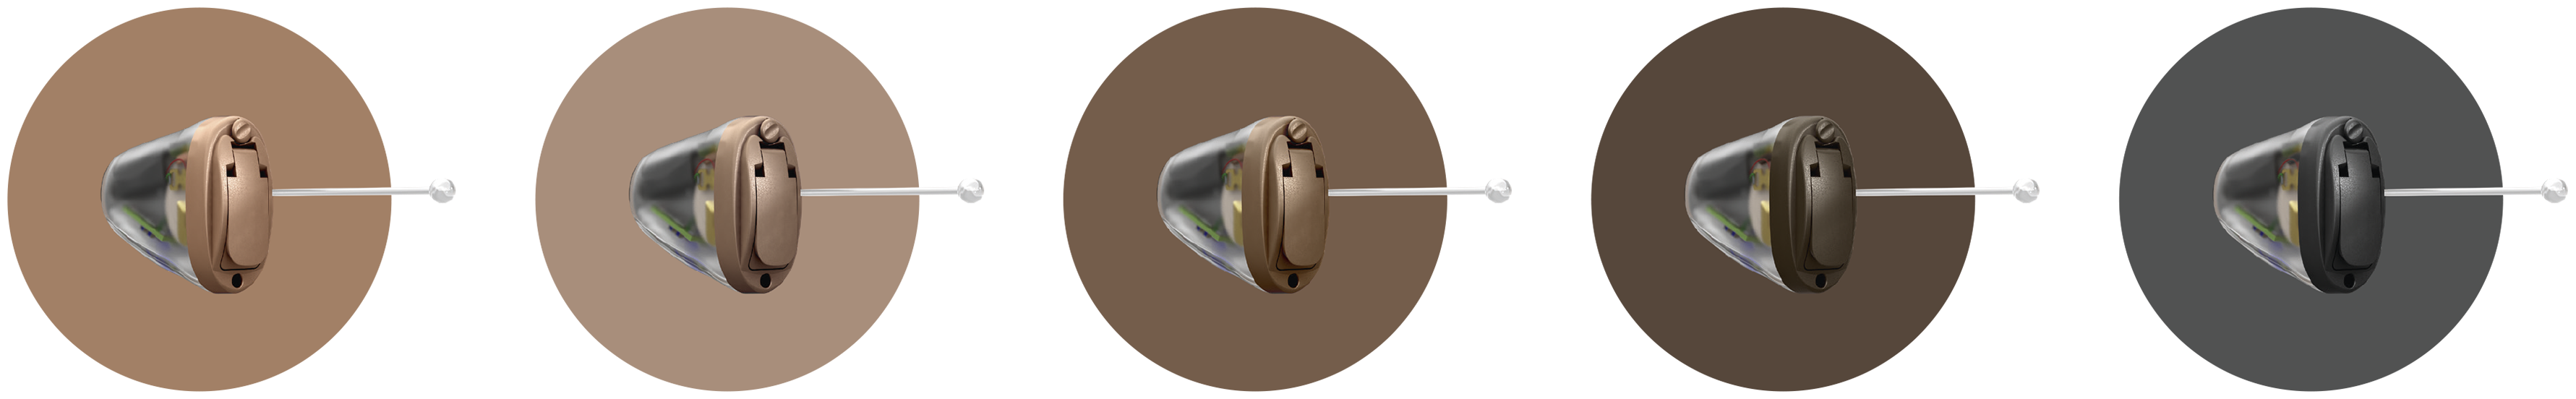 Kiểu dáng máy trợ thính Oticon Jet vô hình trong ống tai